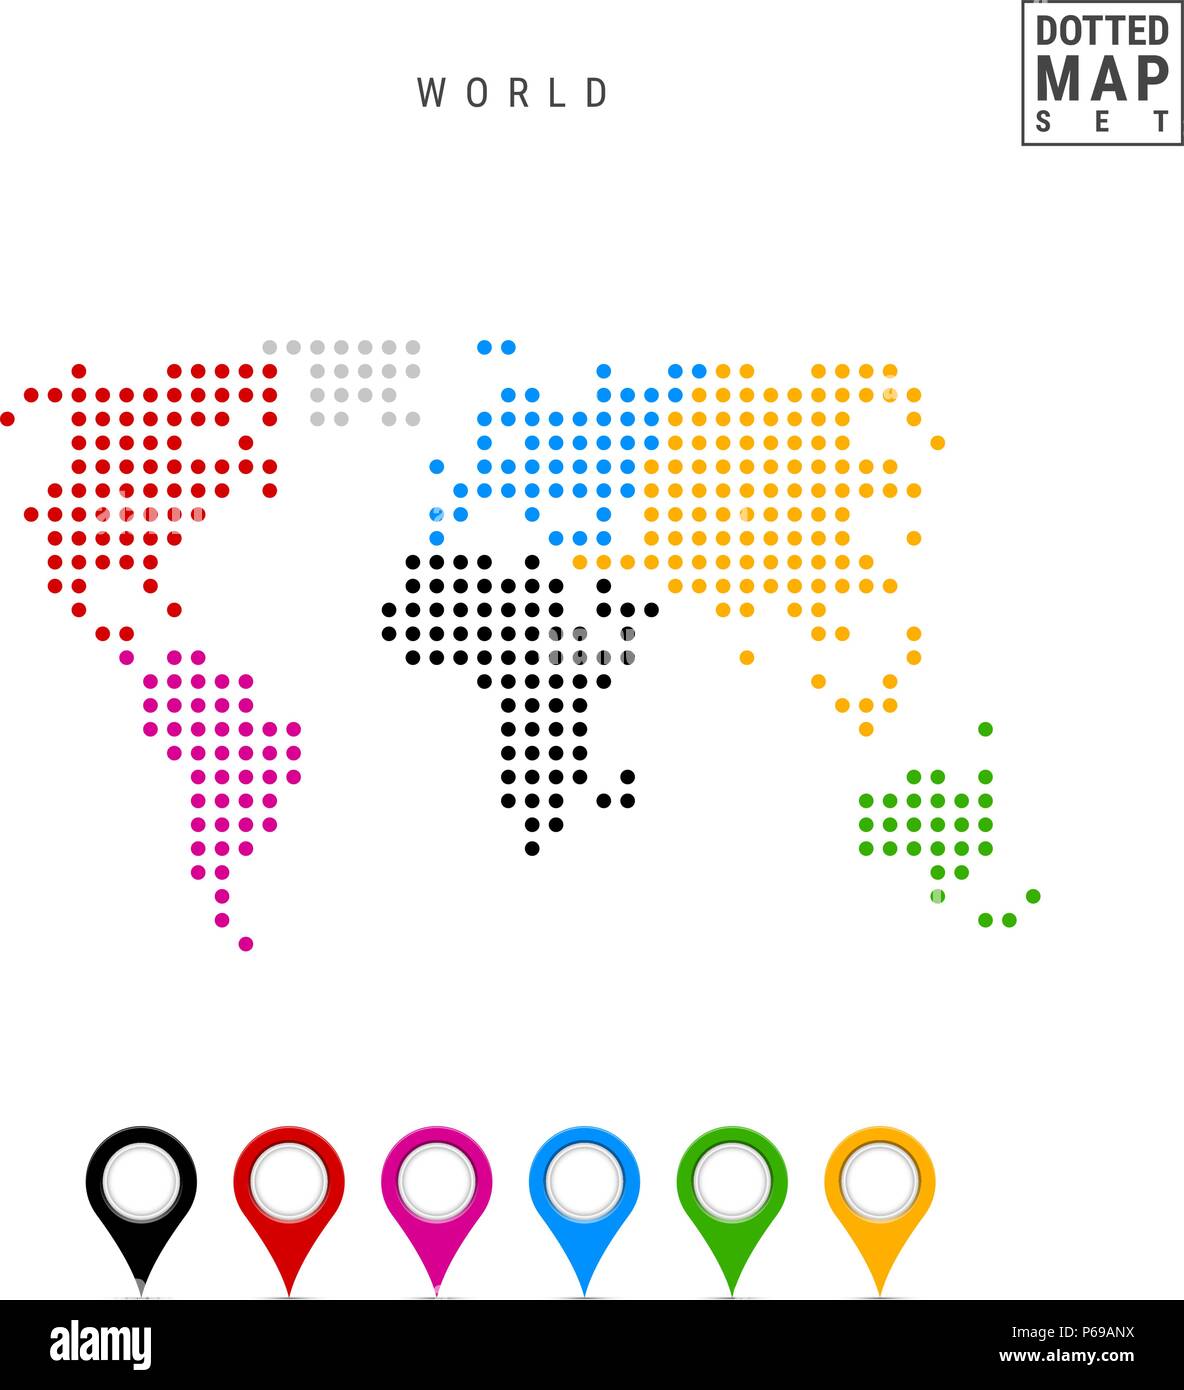 Dots Muster vektorkarte der Welt. Stilisierte Silhouette der Welt. Kontinente sind in verschiedenen Farben hervorgehoben Stock Vektor